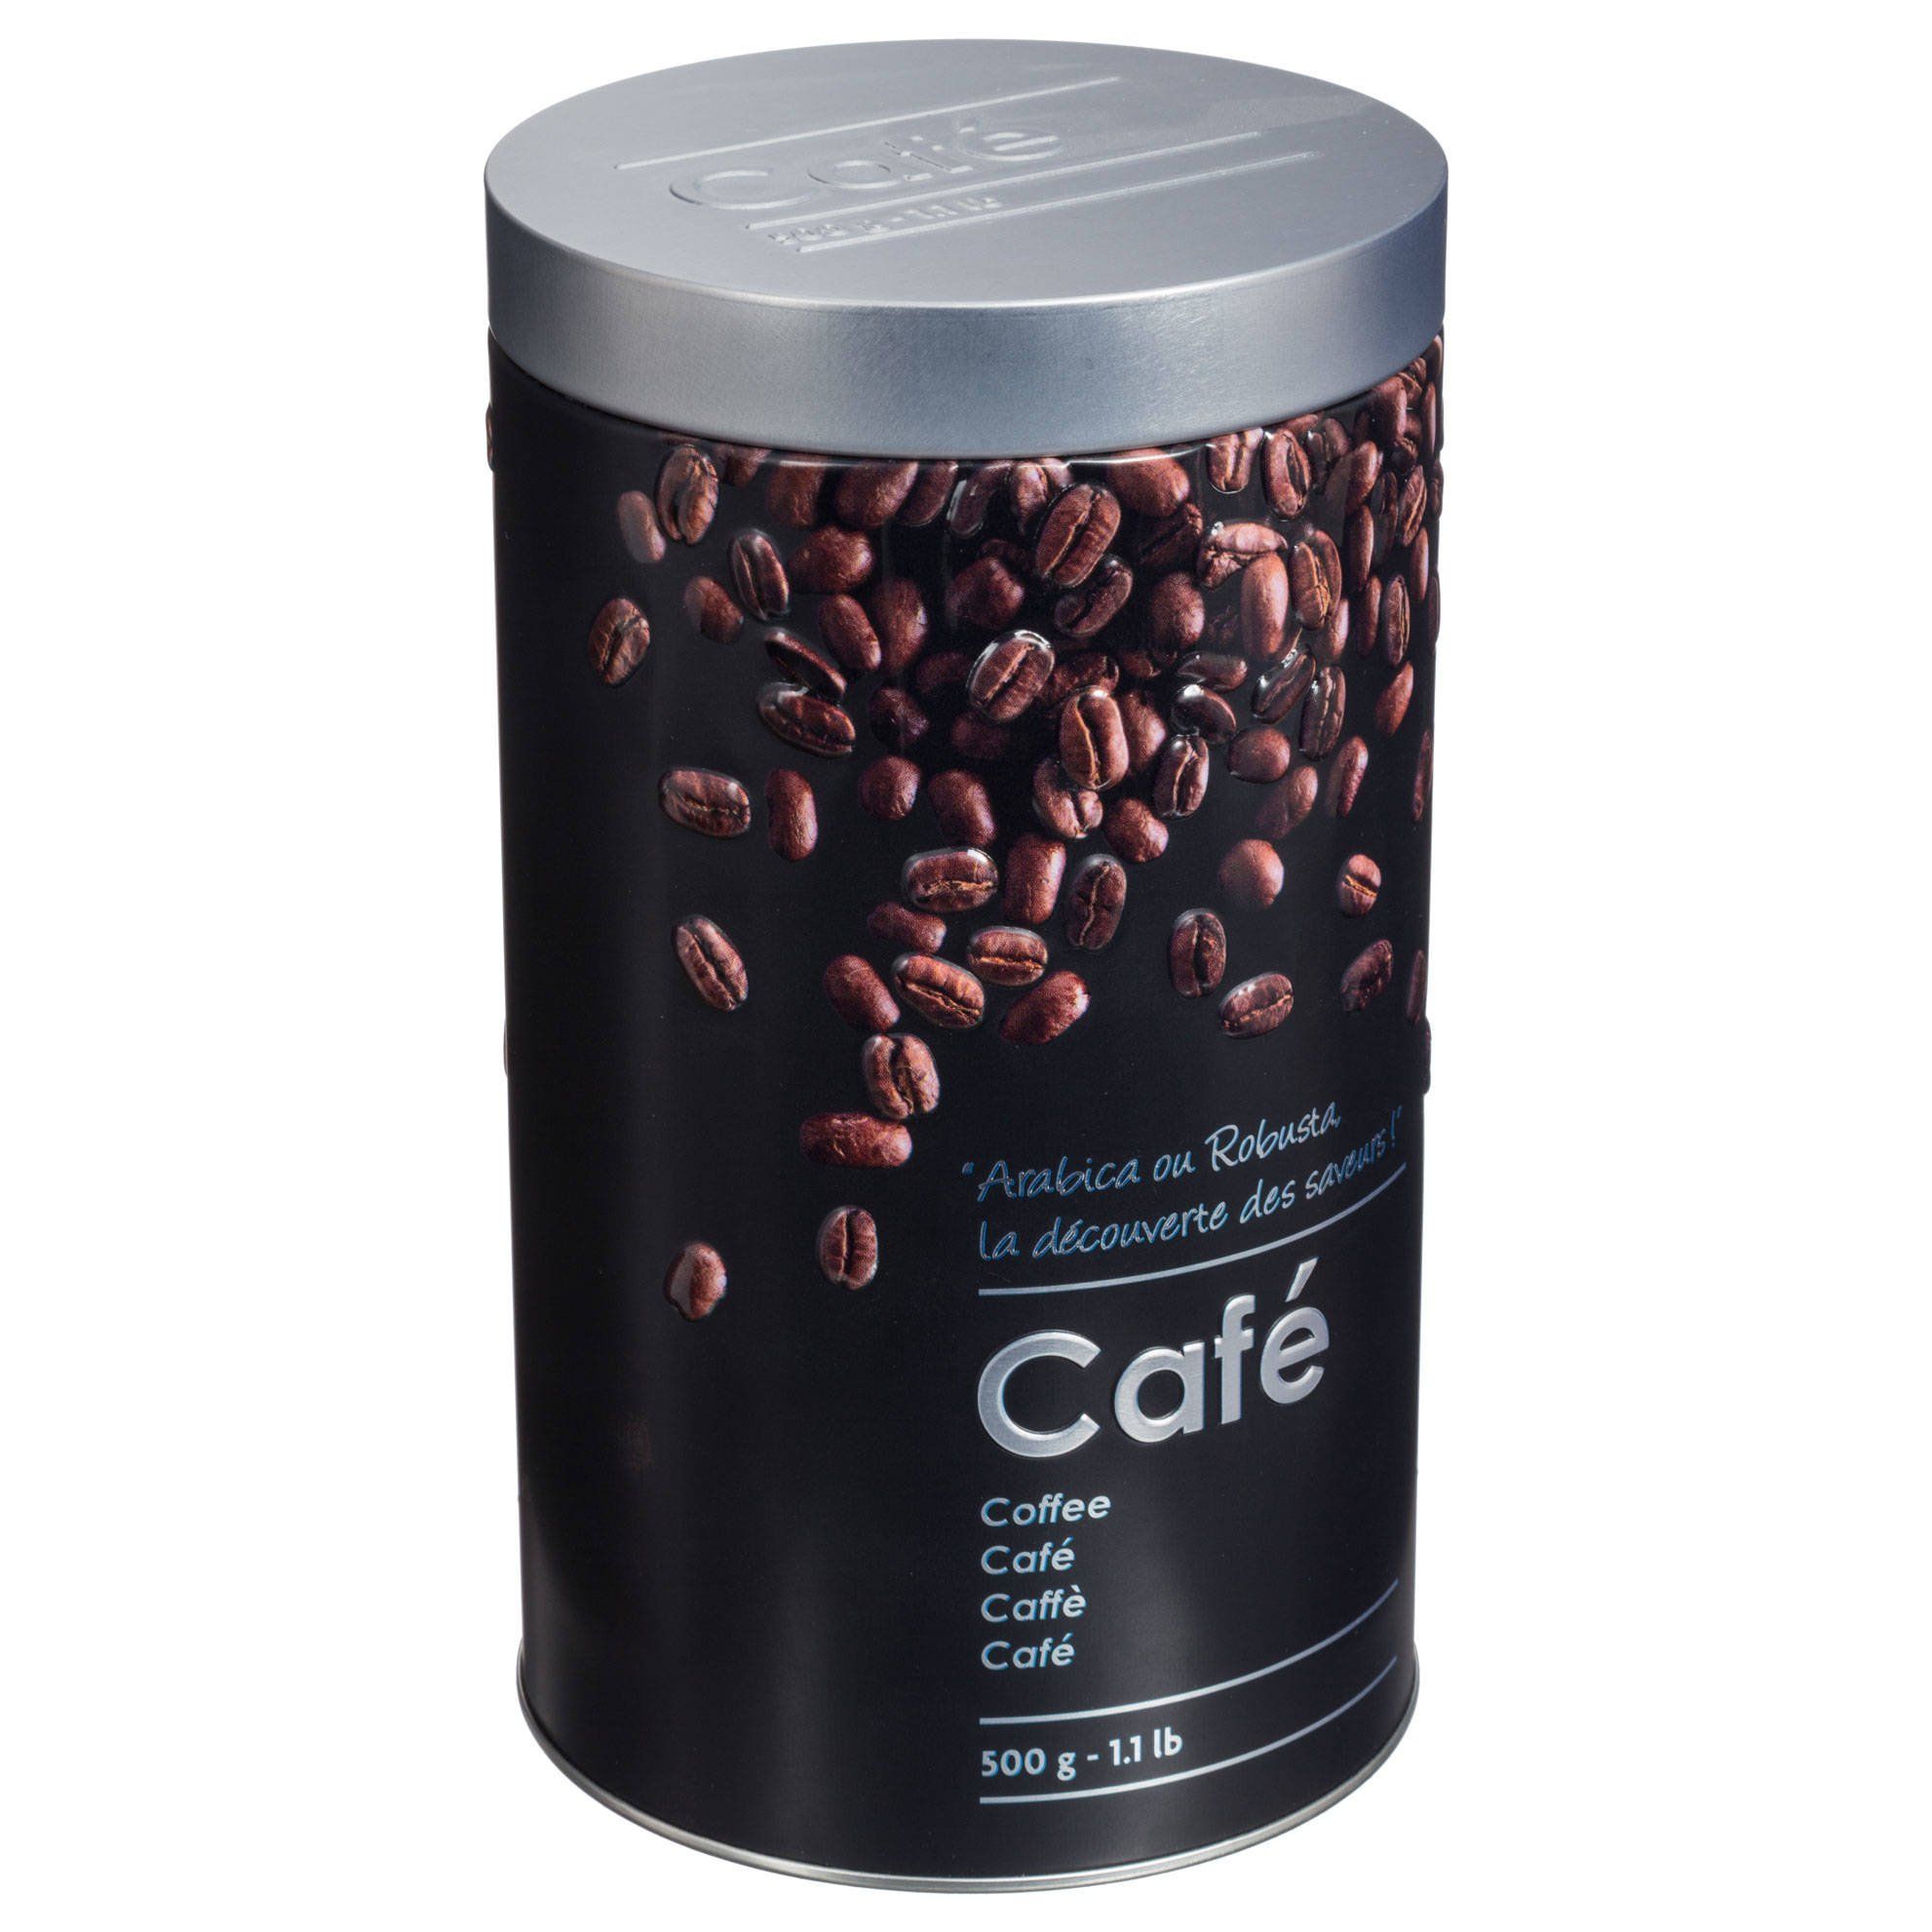 5five Simply Smart Dóza na kávu, kovová, 500 g - EMAKO.CZ s.r.o.